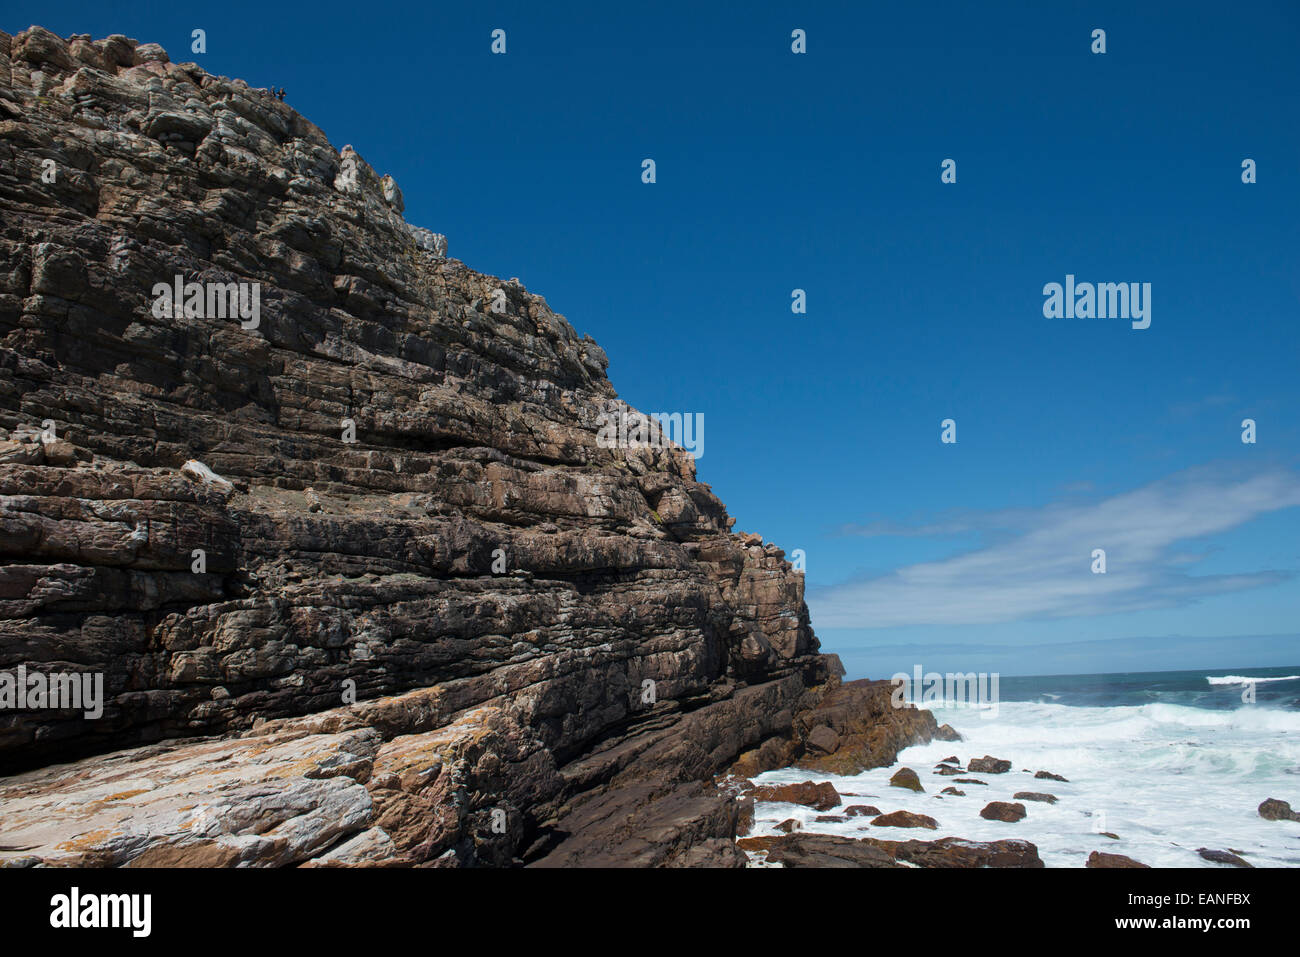 Les touristes en haut de berges rocheuses menant au Cap de Bonne Espérance, Western Cape, Afrique du Sud Banque D'Images